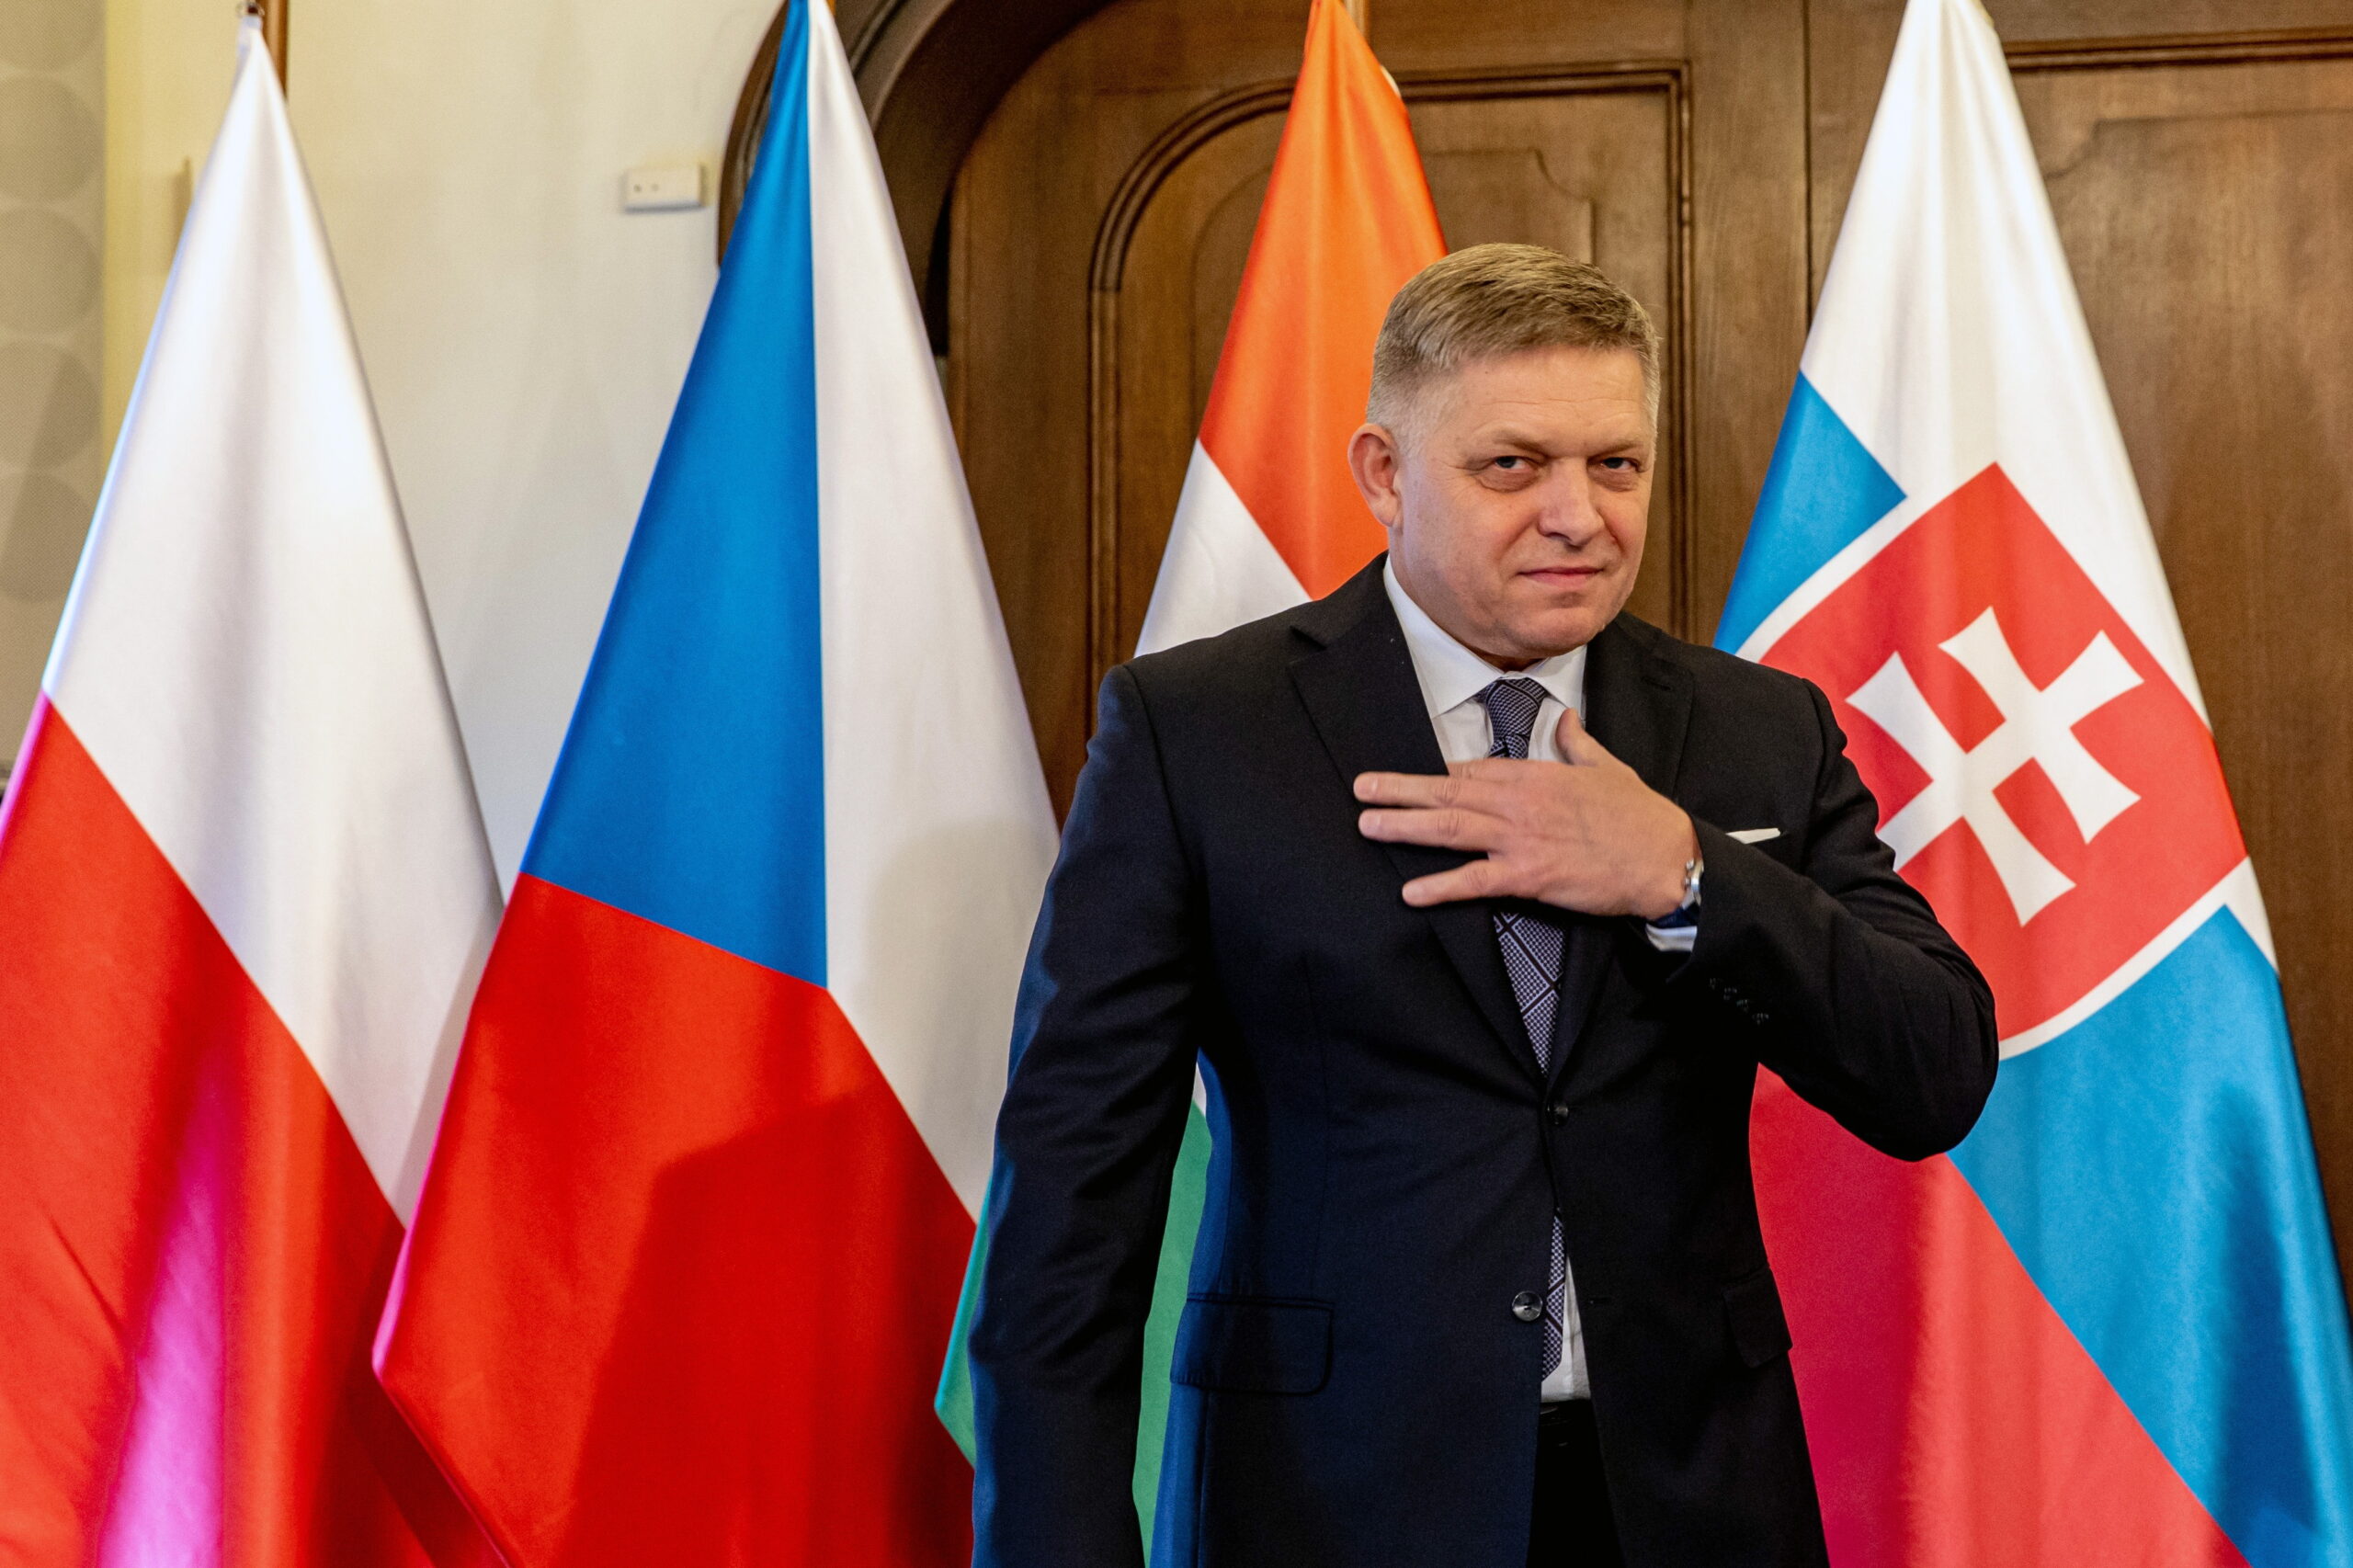 Friss hírek érkeztek Robert Fico állapotáról: maradandó károsodást szenvedett a szlovák miniszterelnök